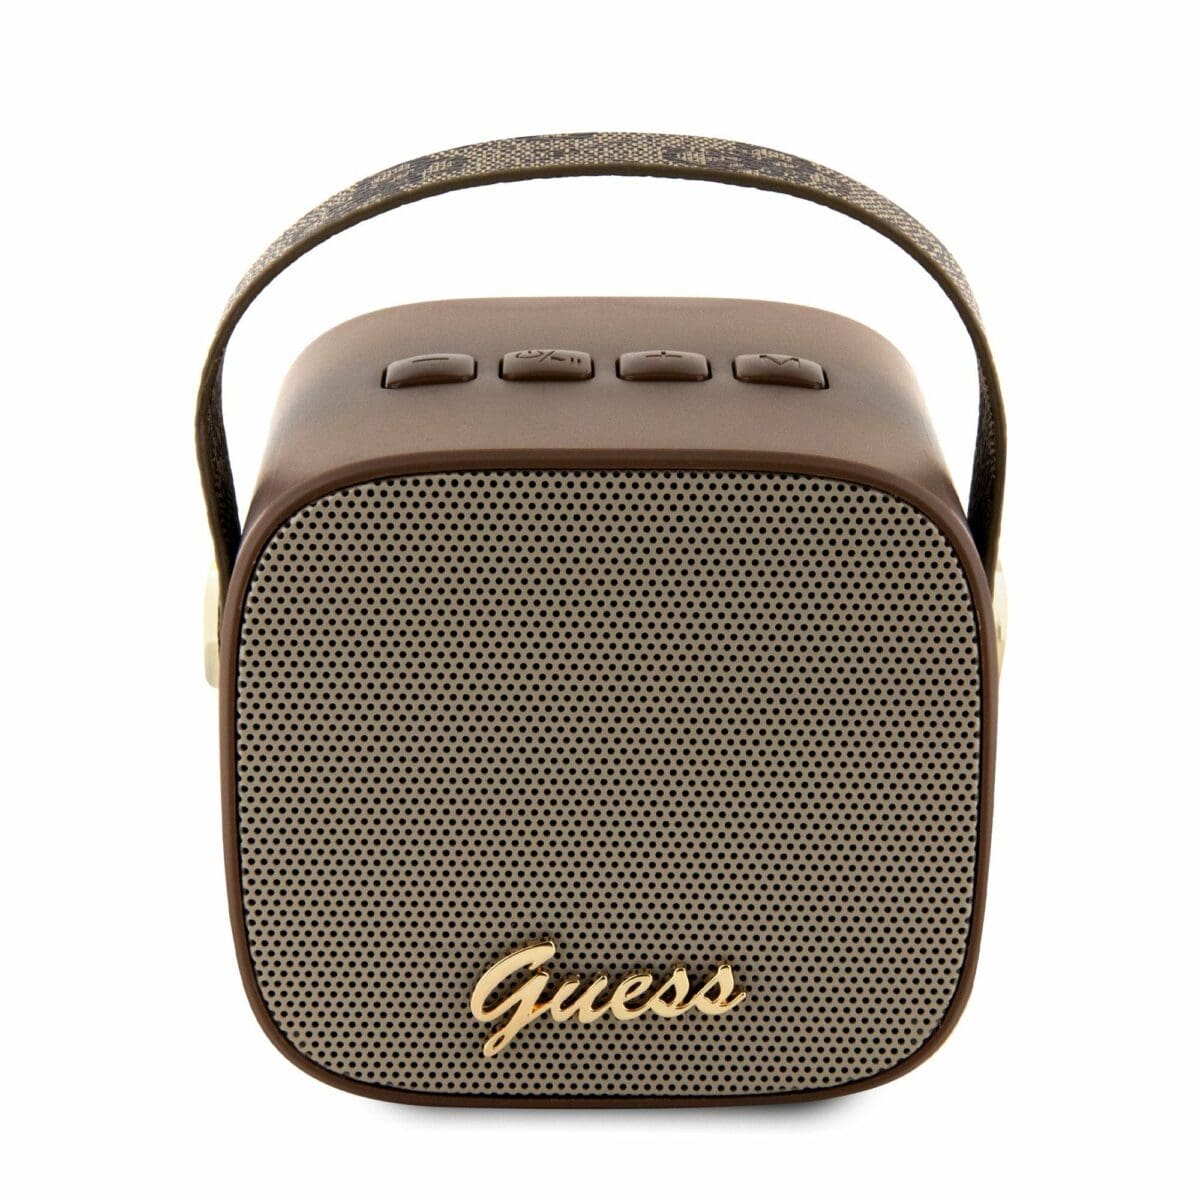 Guess Mini Bluetooth Speaker PU 4G Strap Brown